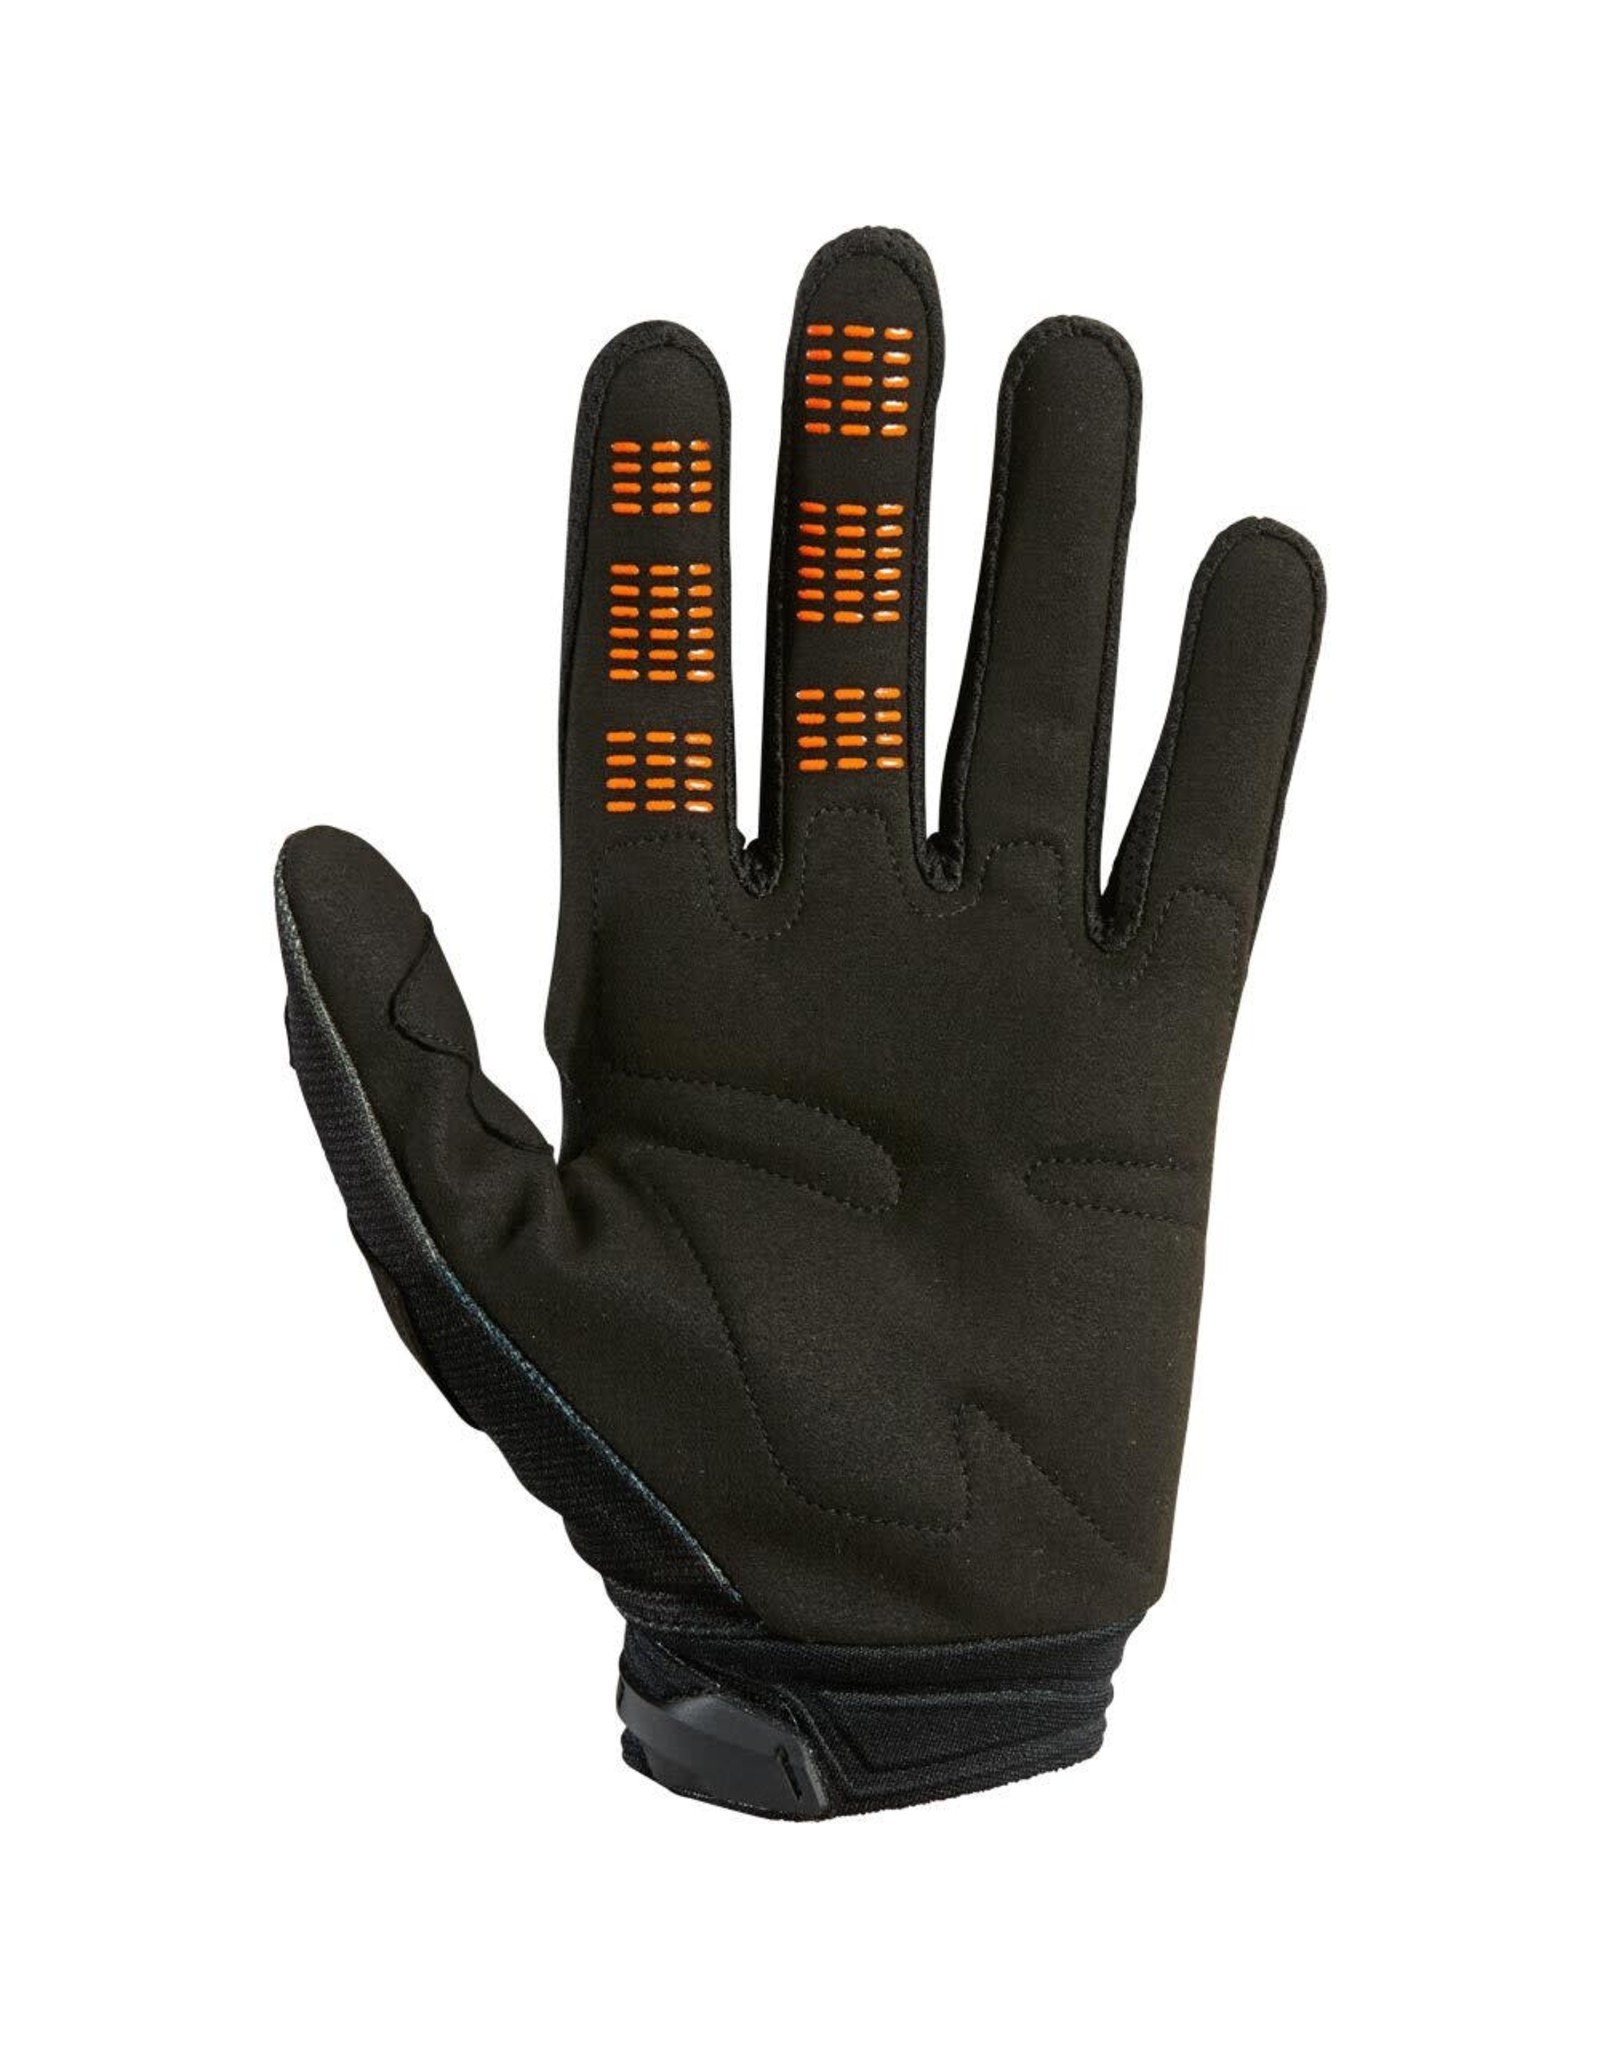 Fox 180 gloves